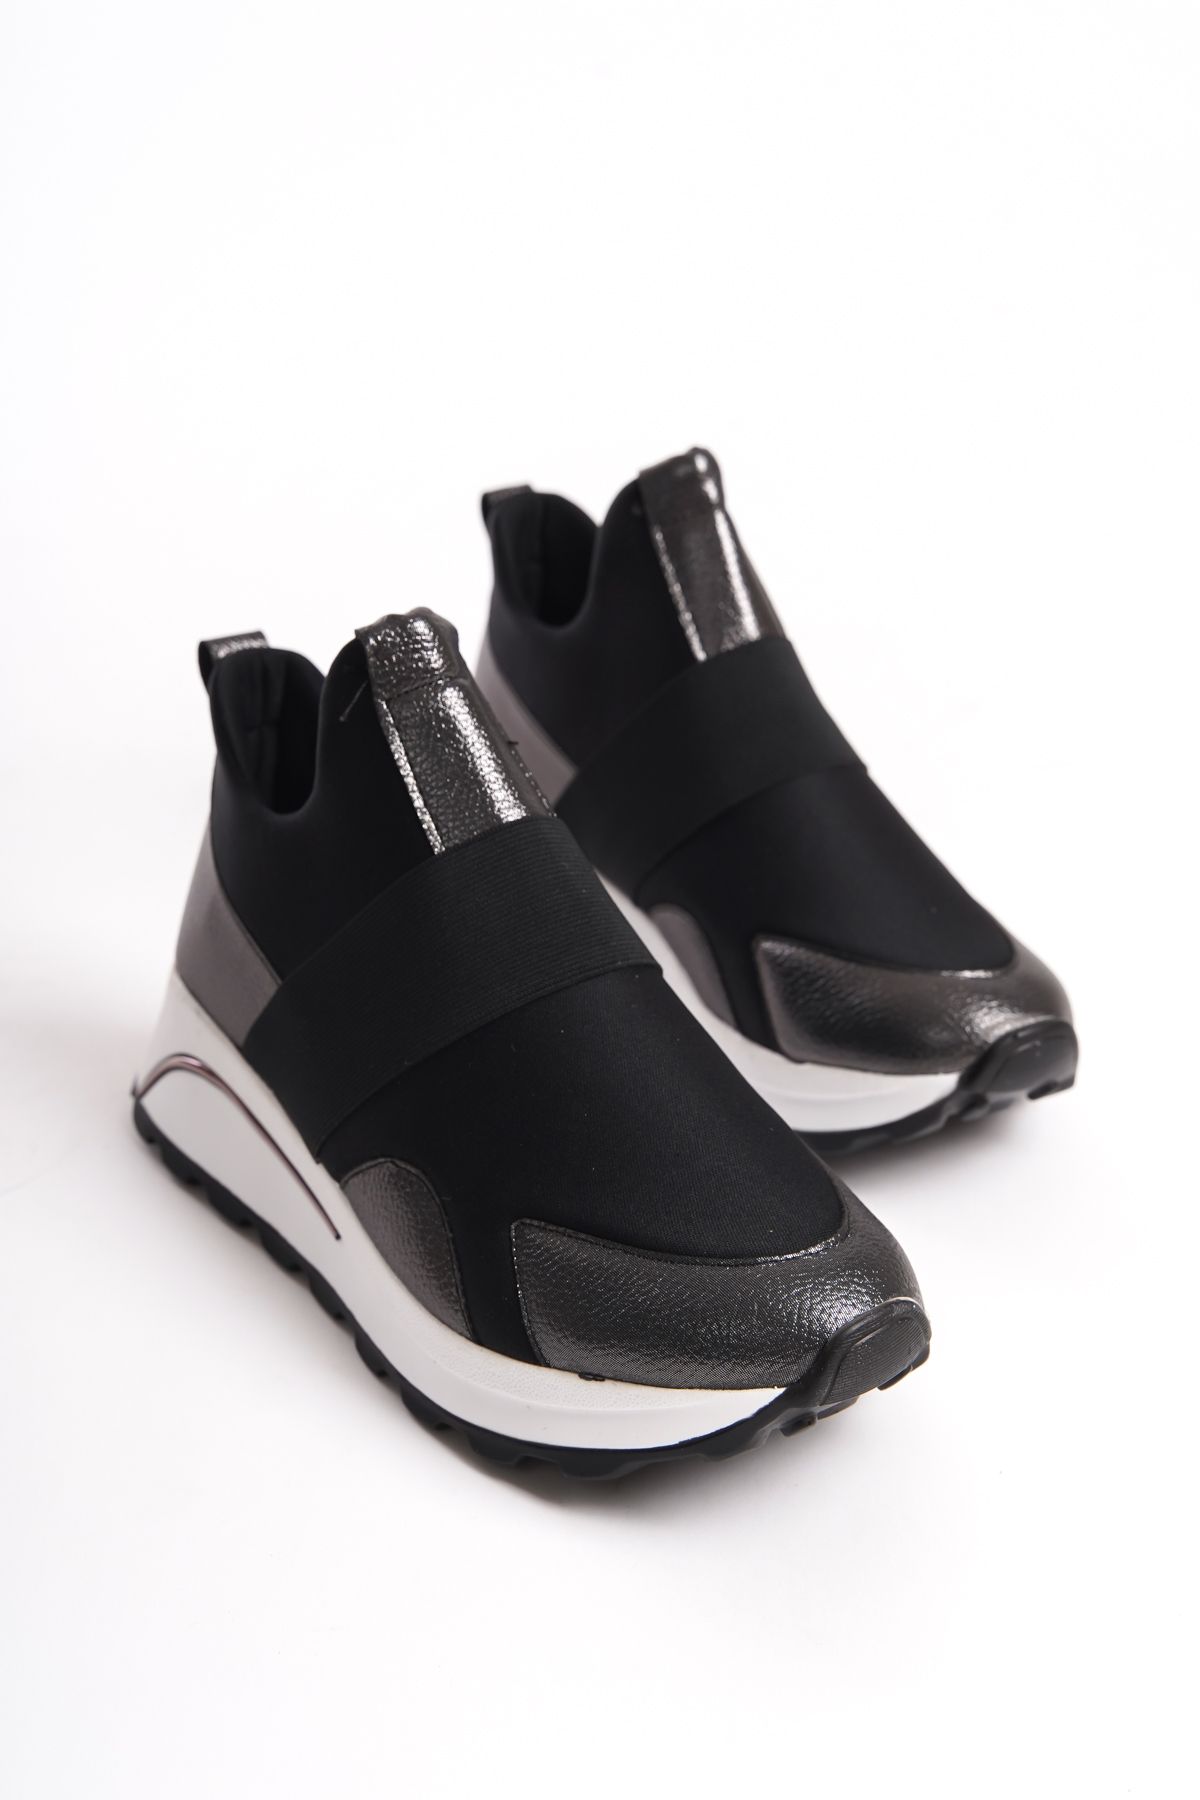 Shoesers Kadın Özel Tasarım Kalın Tabanlı Bilekli Spor Ayakkabı, Yürüyüş Ayakkabısı